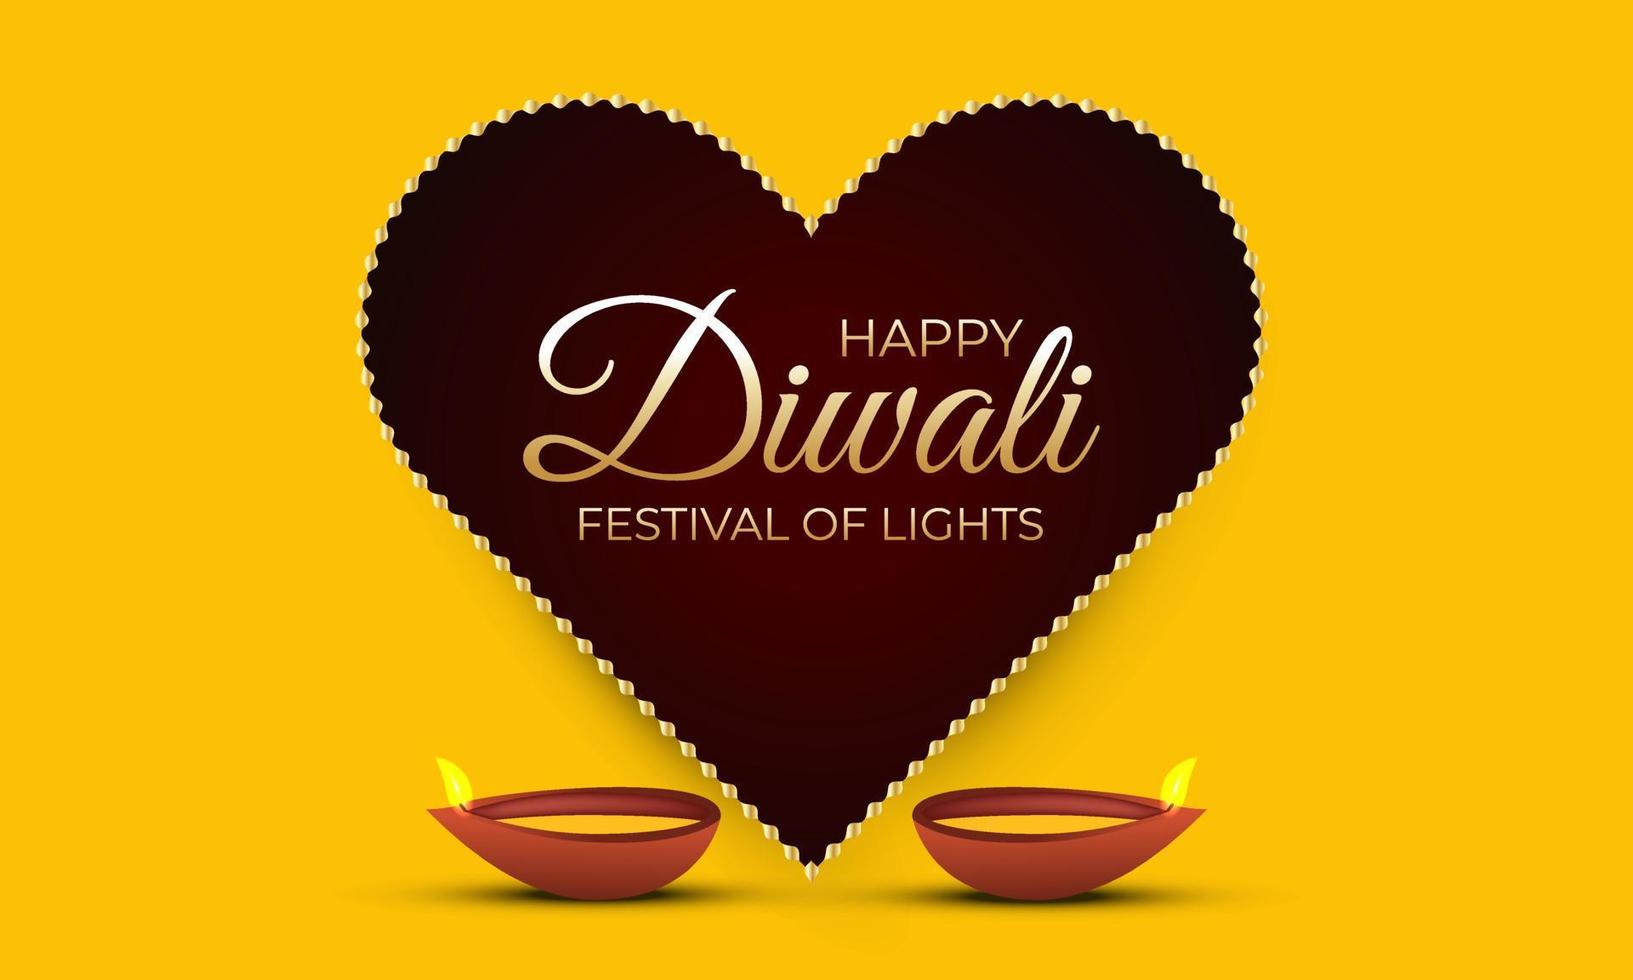 projeto bonito do fundo da celebração do festival de diwali feliz. vetor